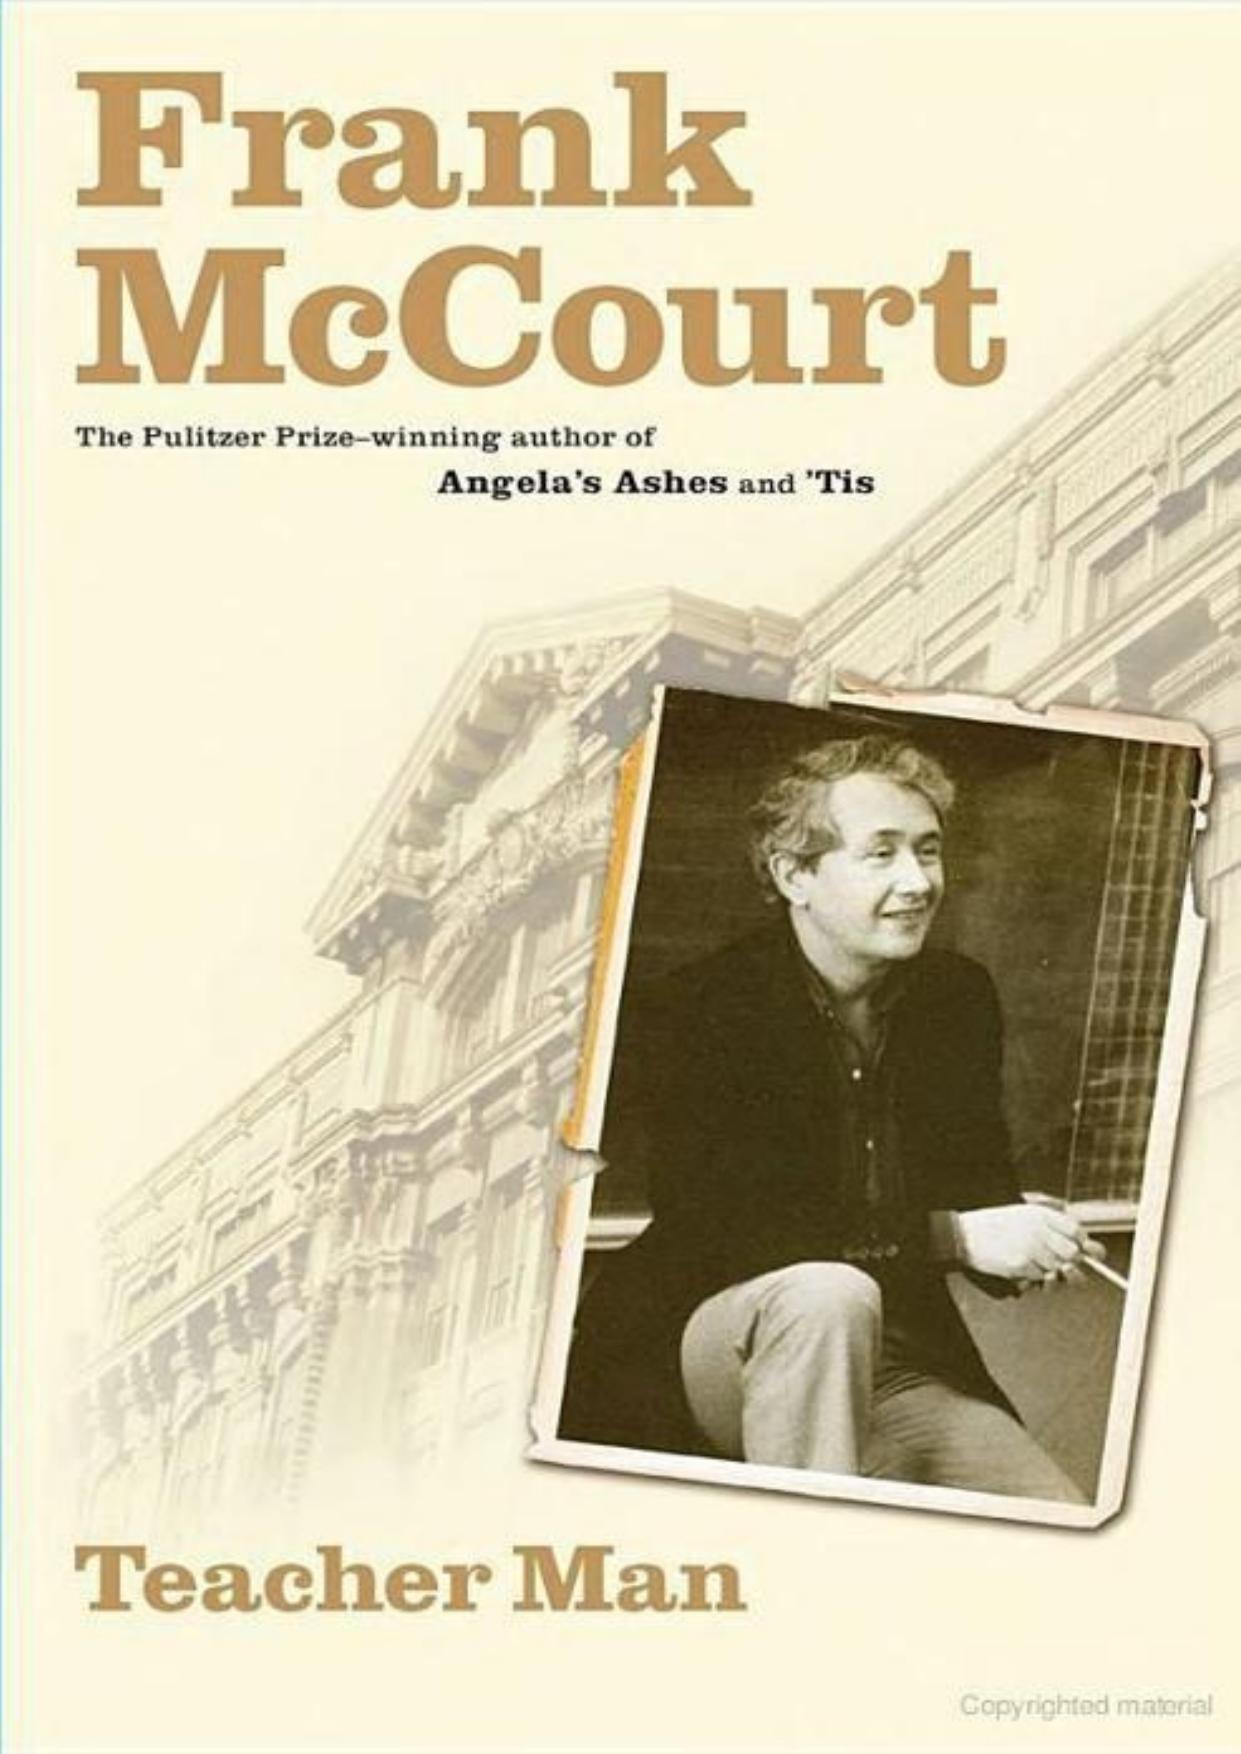 Teacher Man: A Memoir by Frank McCourt